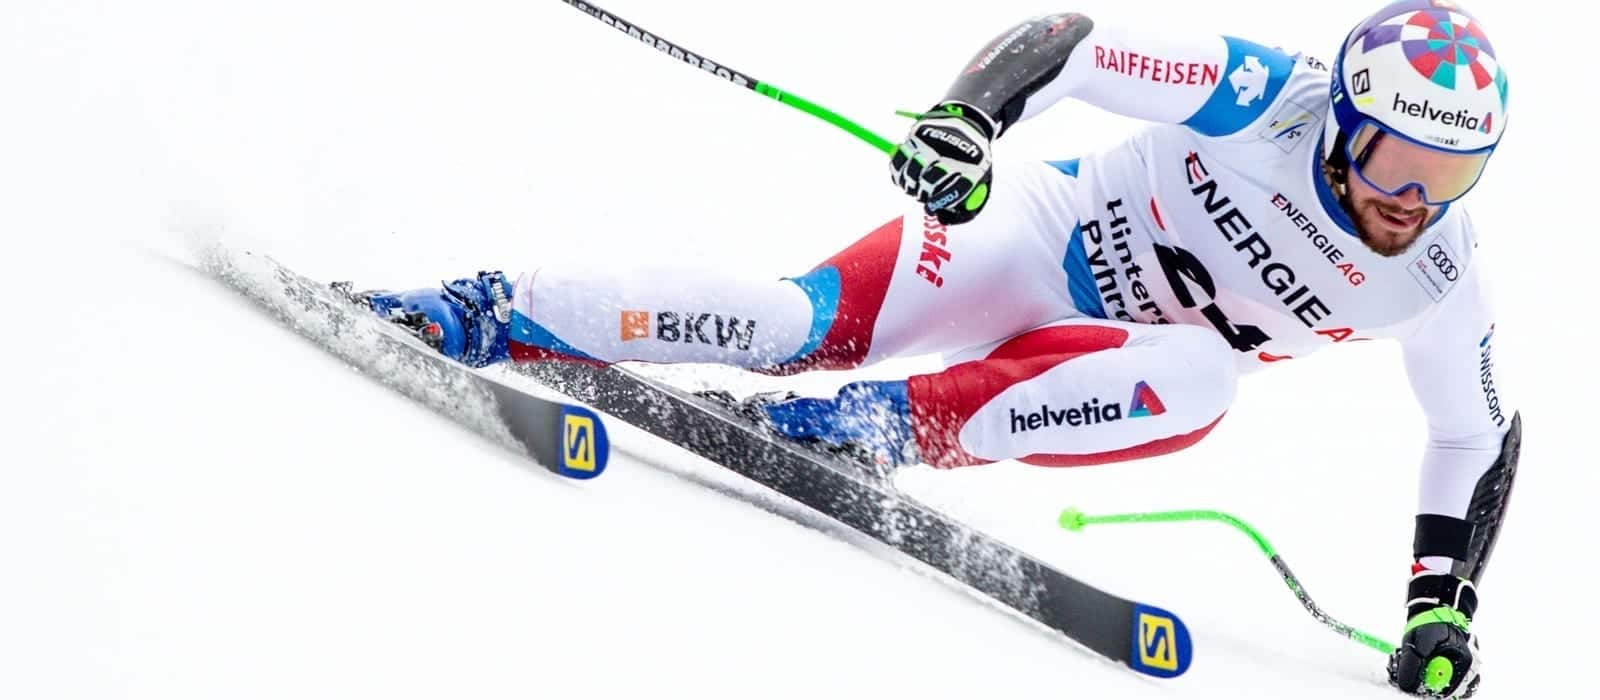 Switzerland's Luca Aerni to Fischer ski